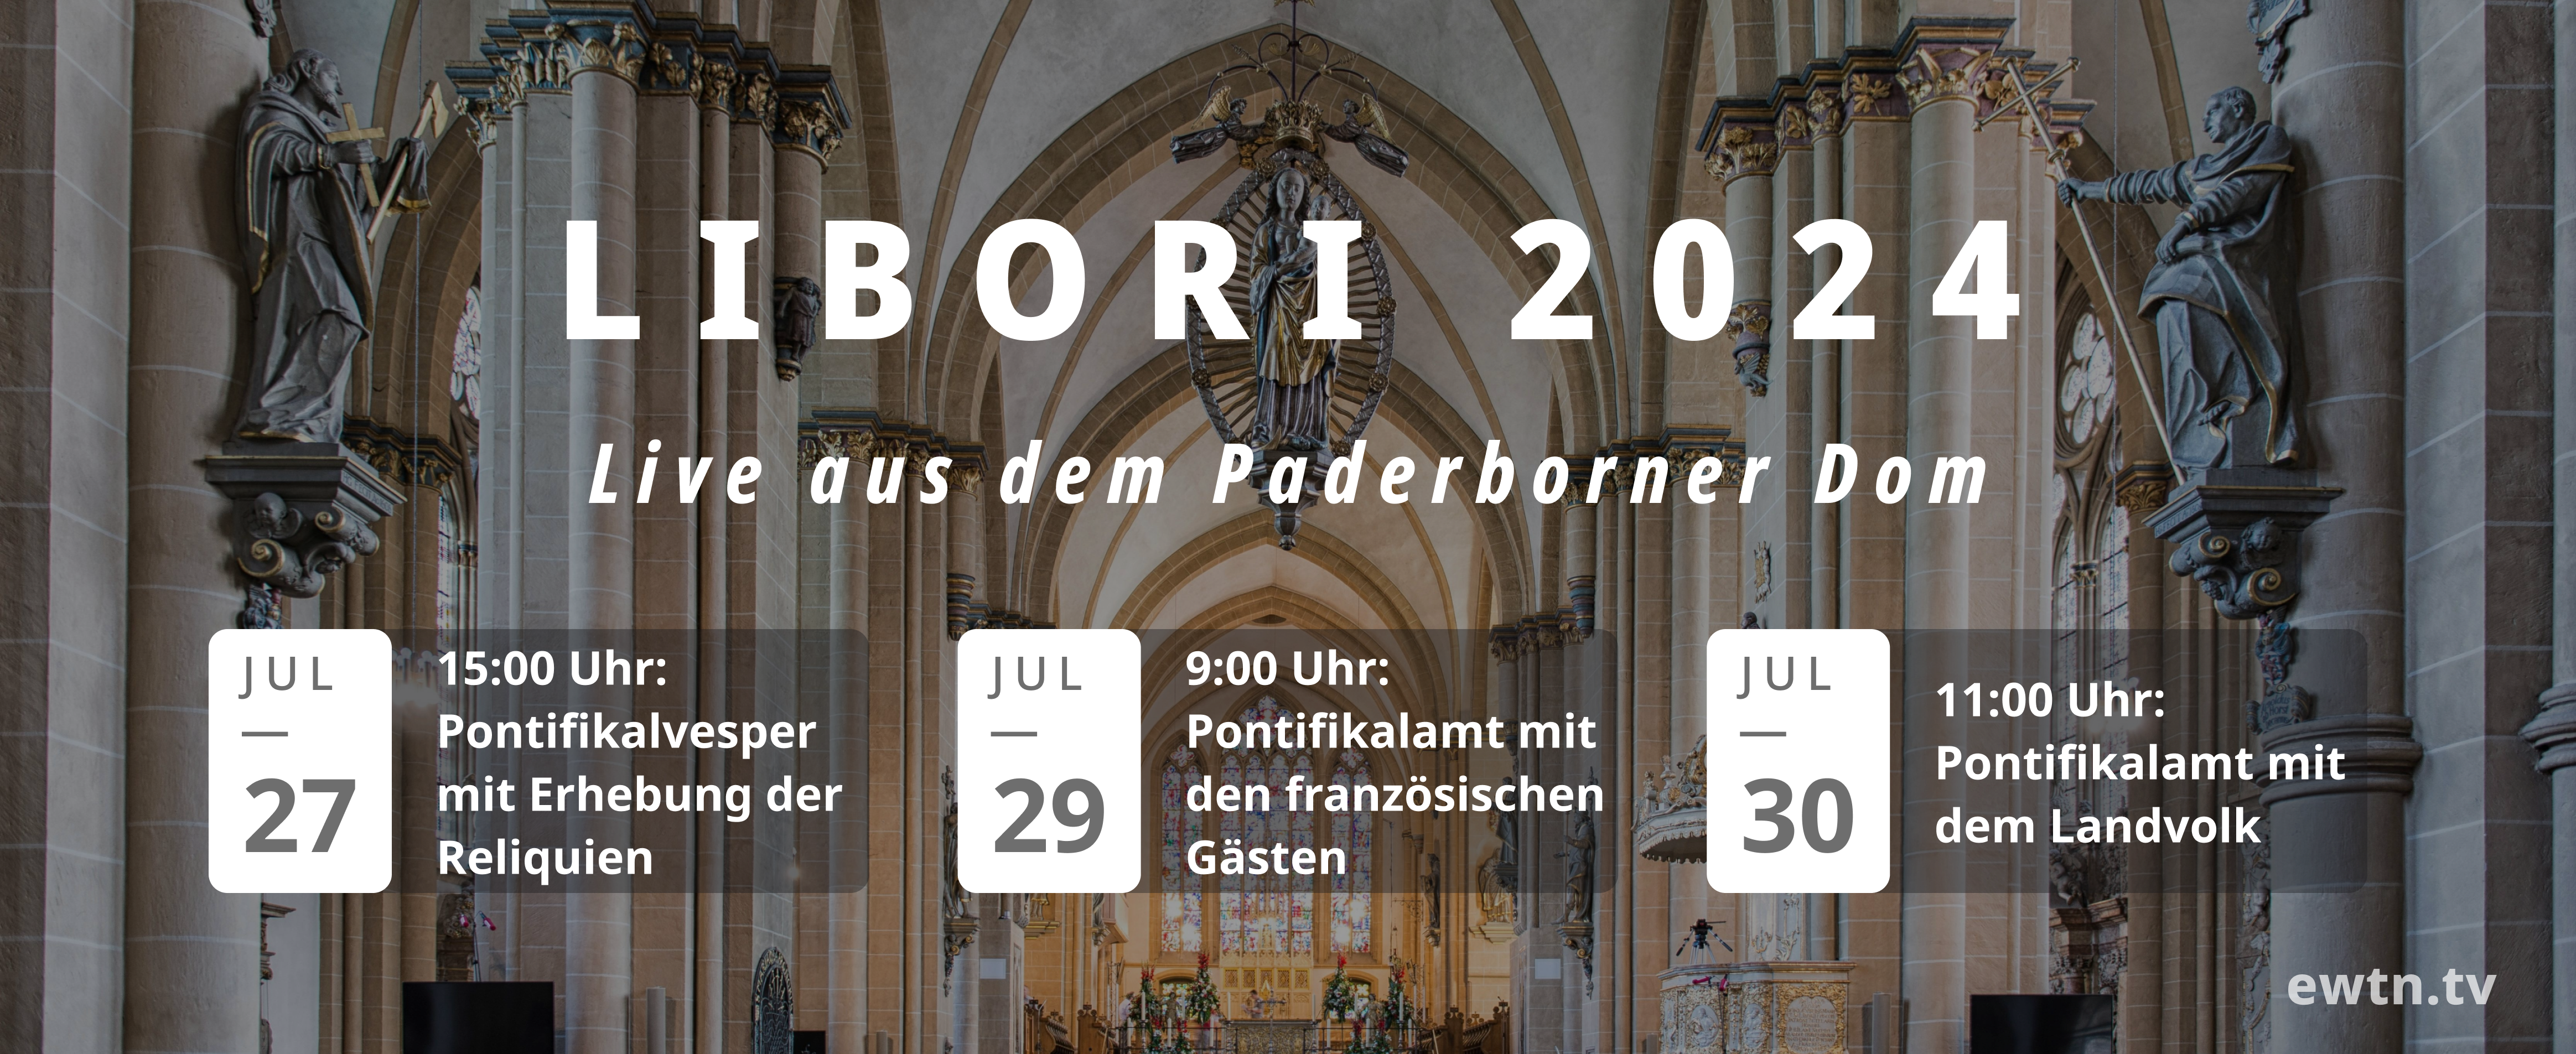 Libori 2024 aus dem Paderborner Dom